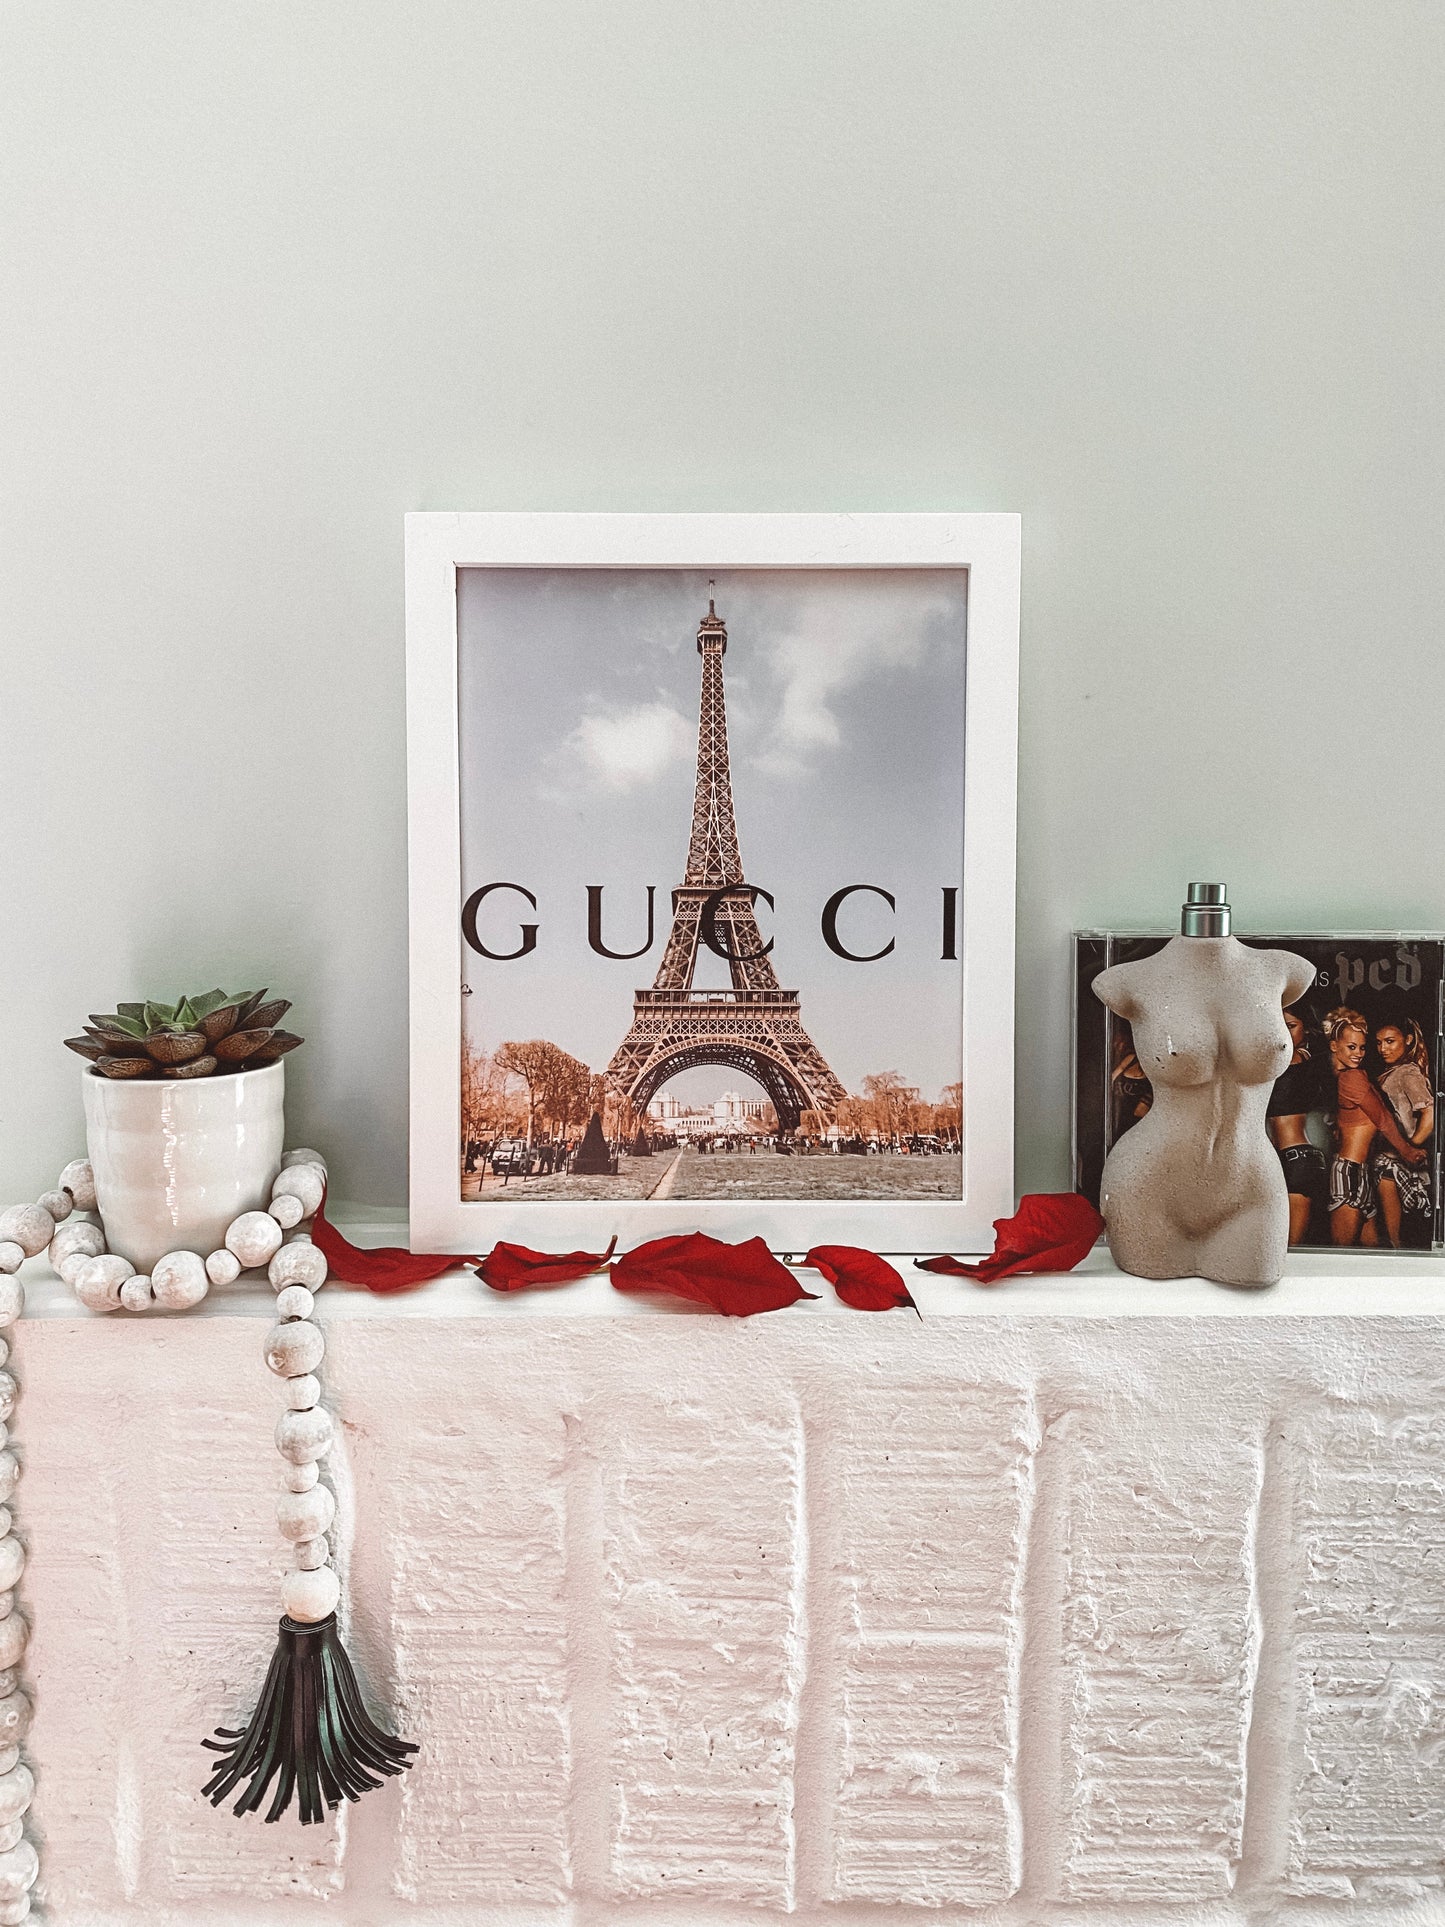 Gucci in Paris